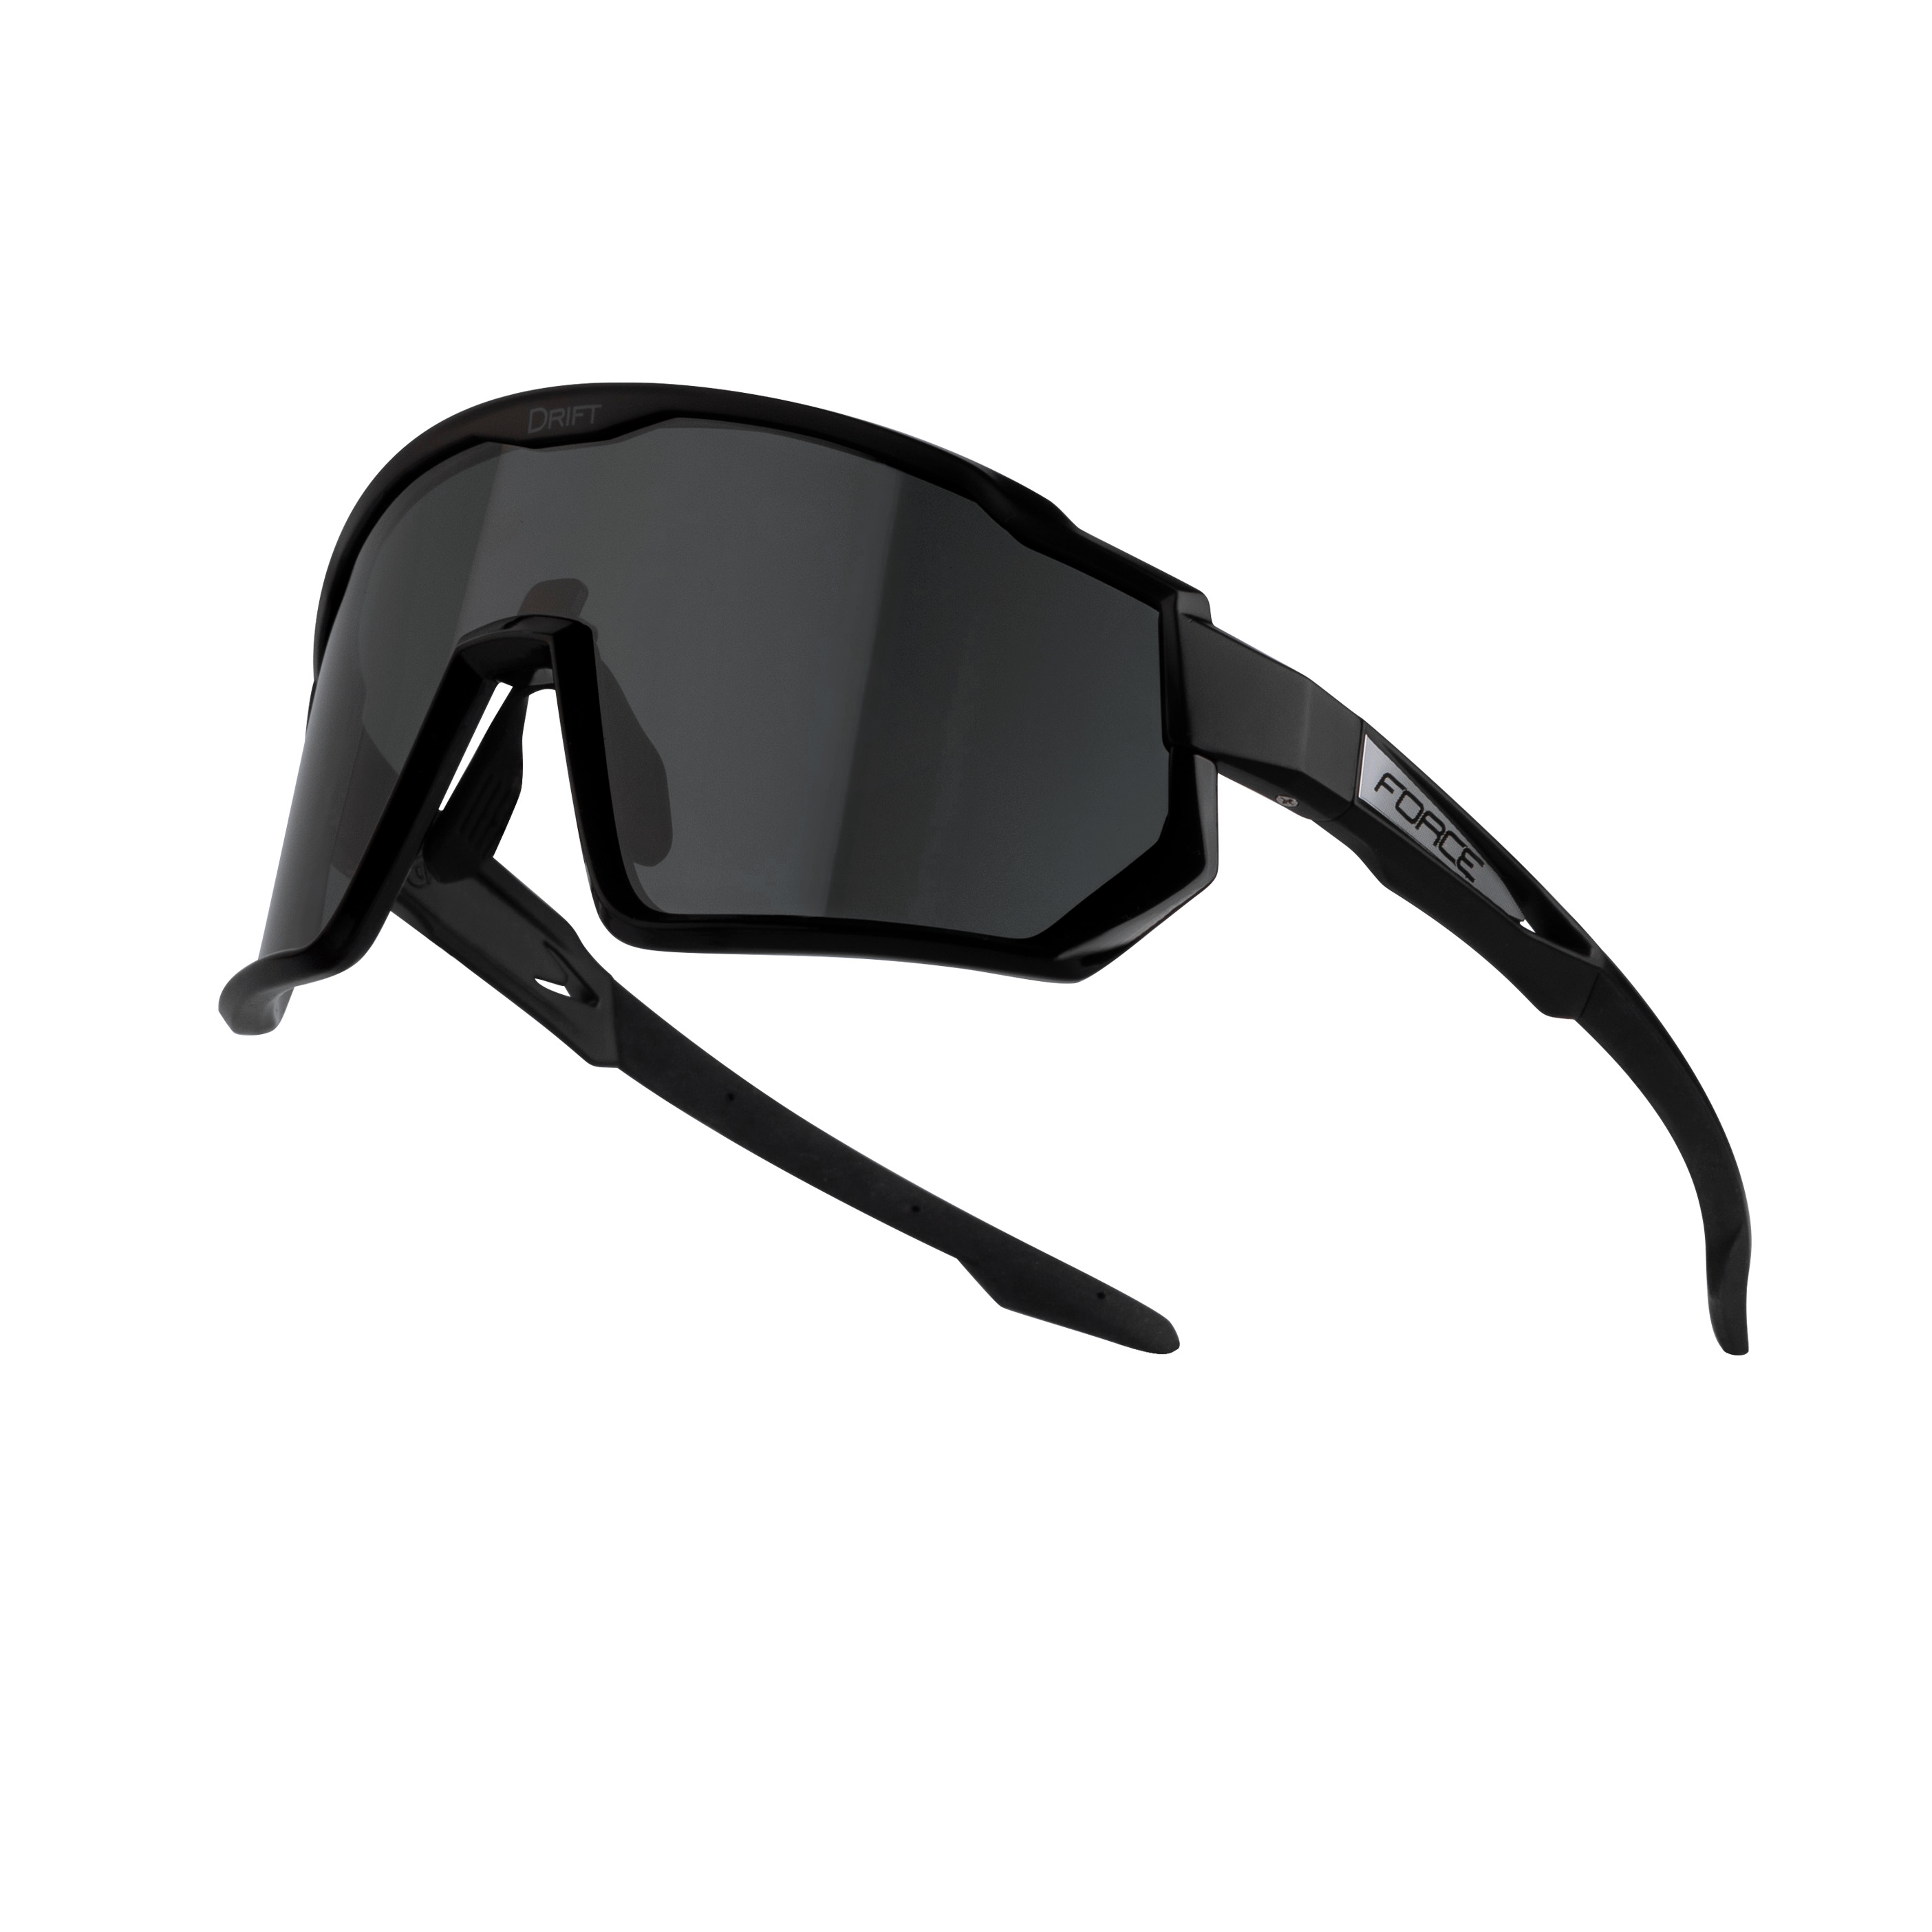 FORCE brýle F DRIFT černé, polarizační+černé sklo SADA Barva: Černá, určení: cyklistické, skla: polarizační